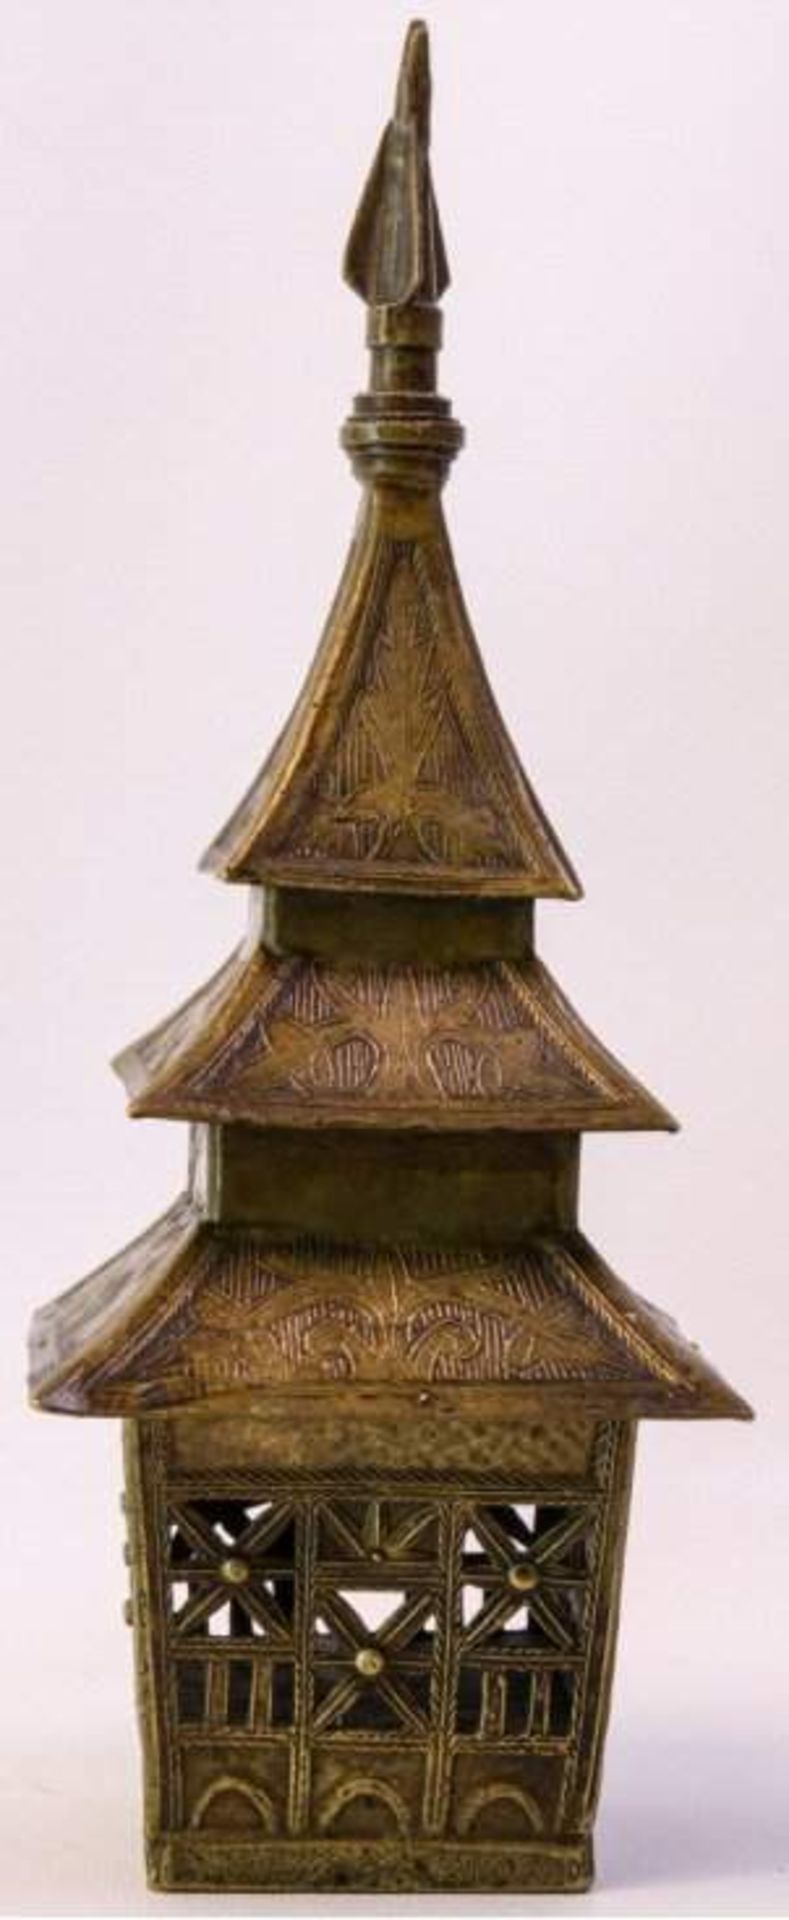 Weihrauchbehälter aus Bronze 19. Jh.In Form einer Pagode, durchbrochen gearbeitet,Ornamentdekor, - Bild 2 aus 4